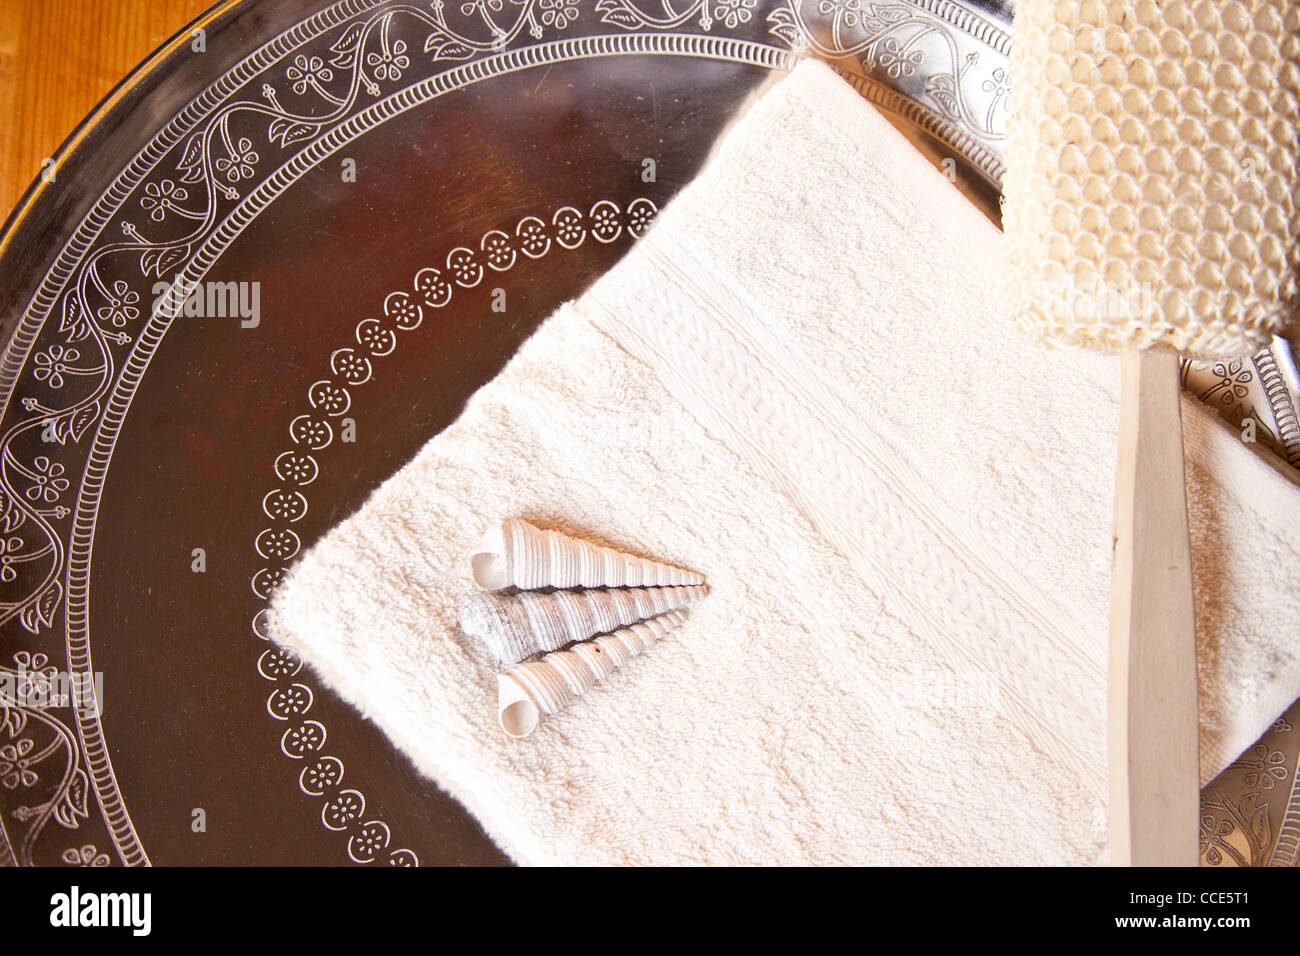 Luxus-Bad oder Dusche mit Handtuch, Pinsel und Muscheln auf silberne Schuppe Stockfoto